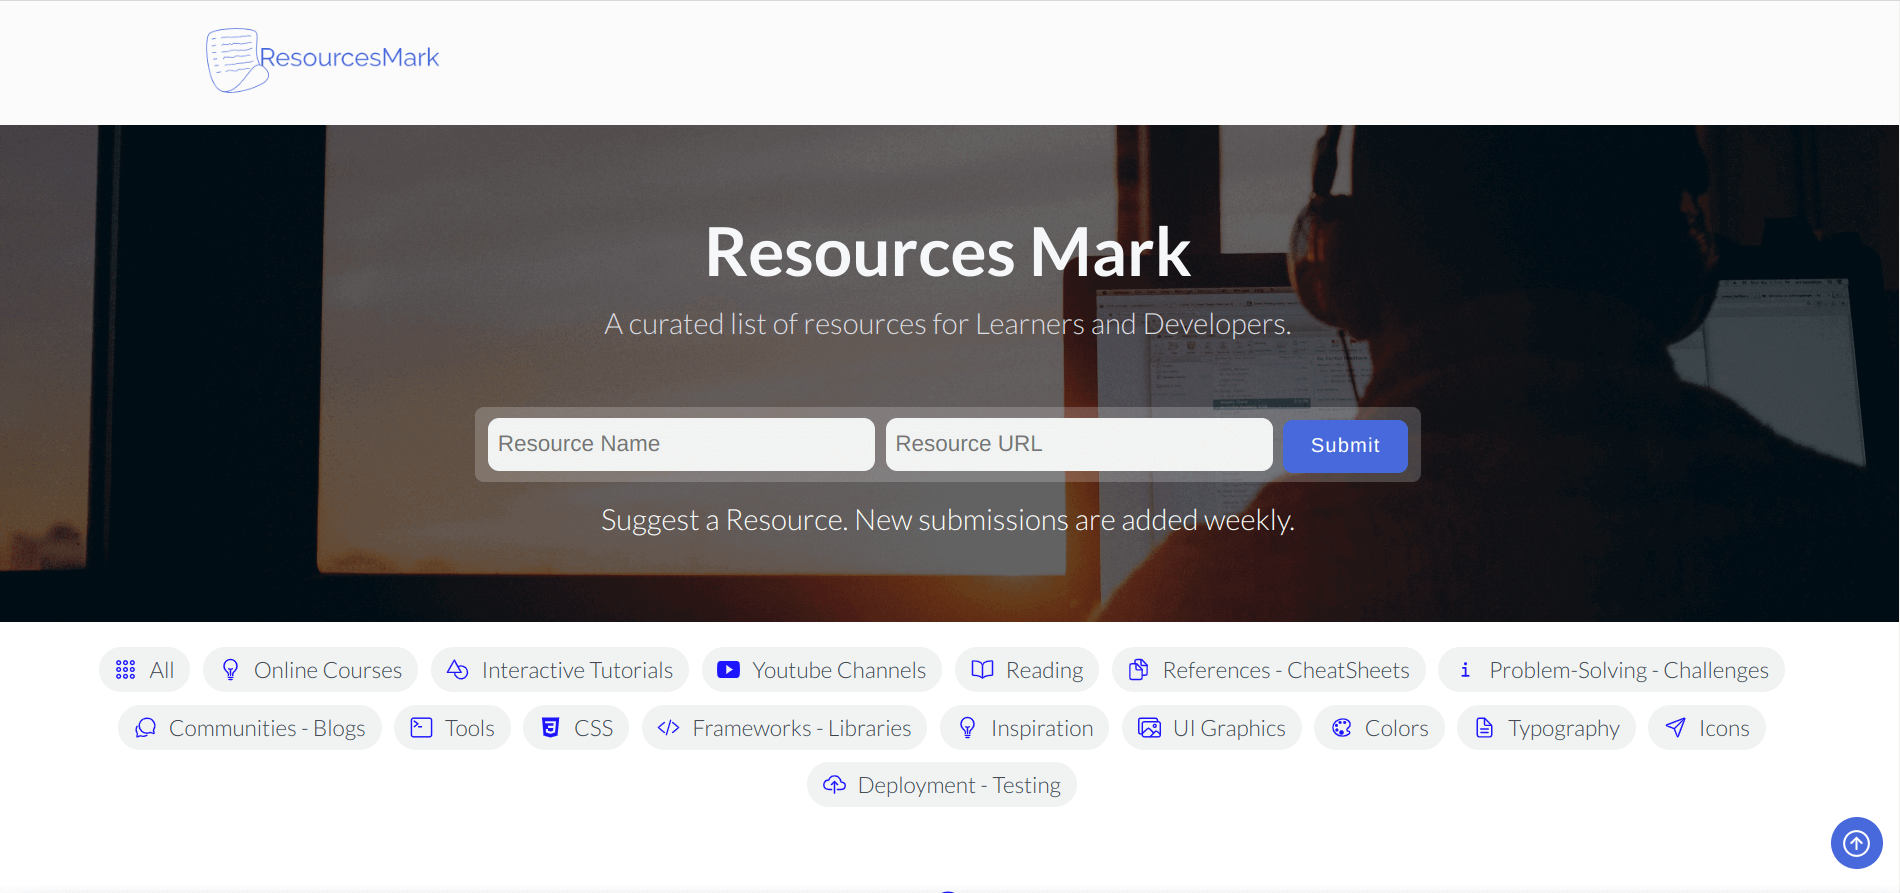 ResourcesMark